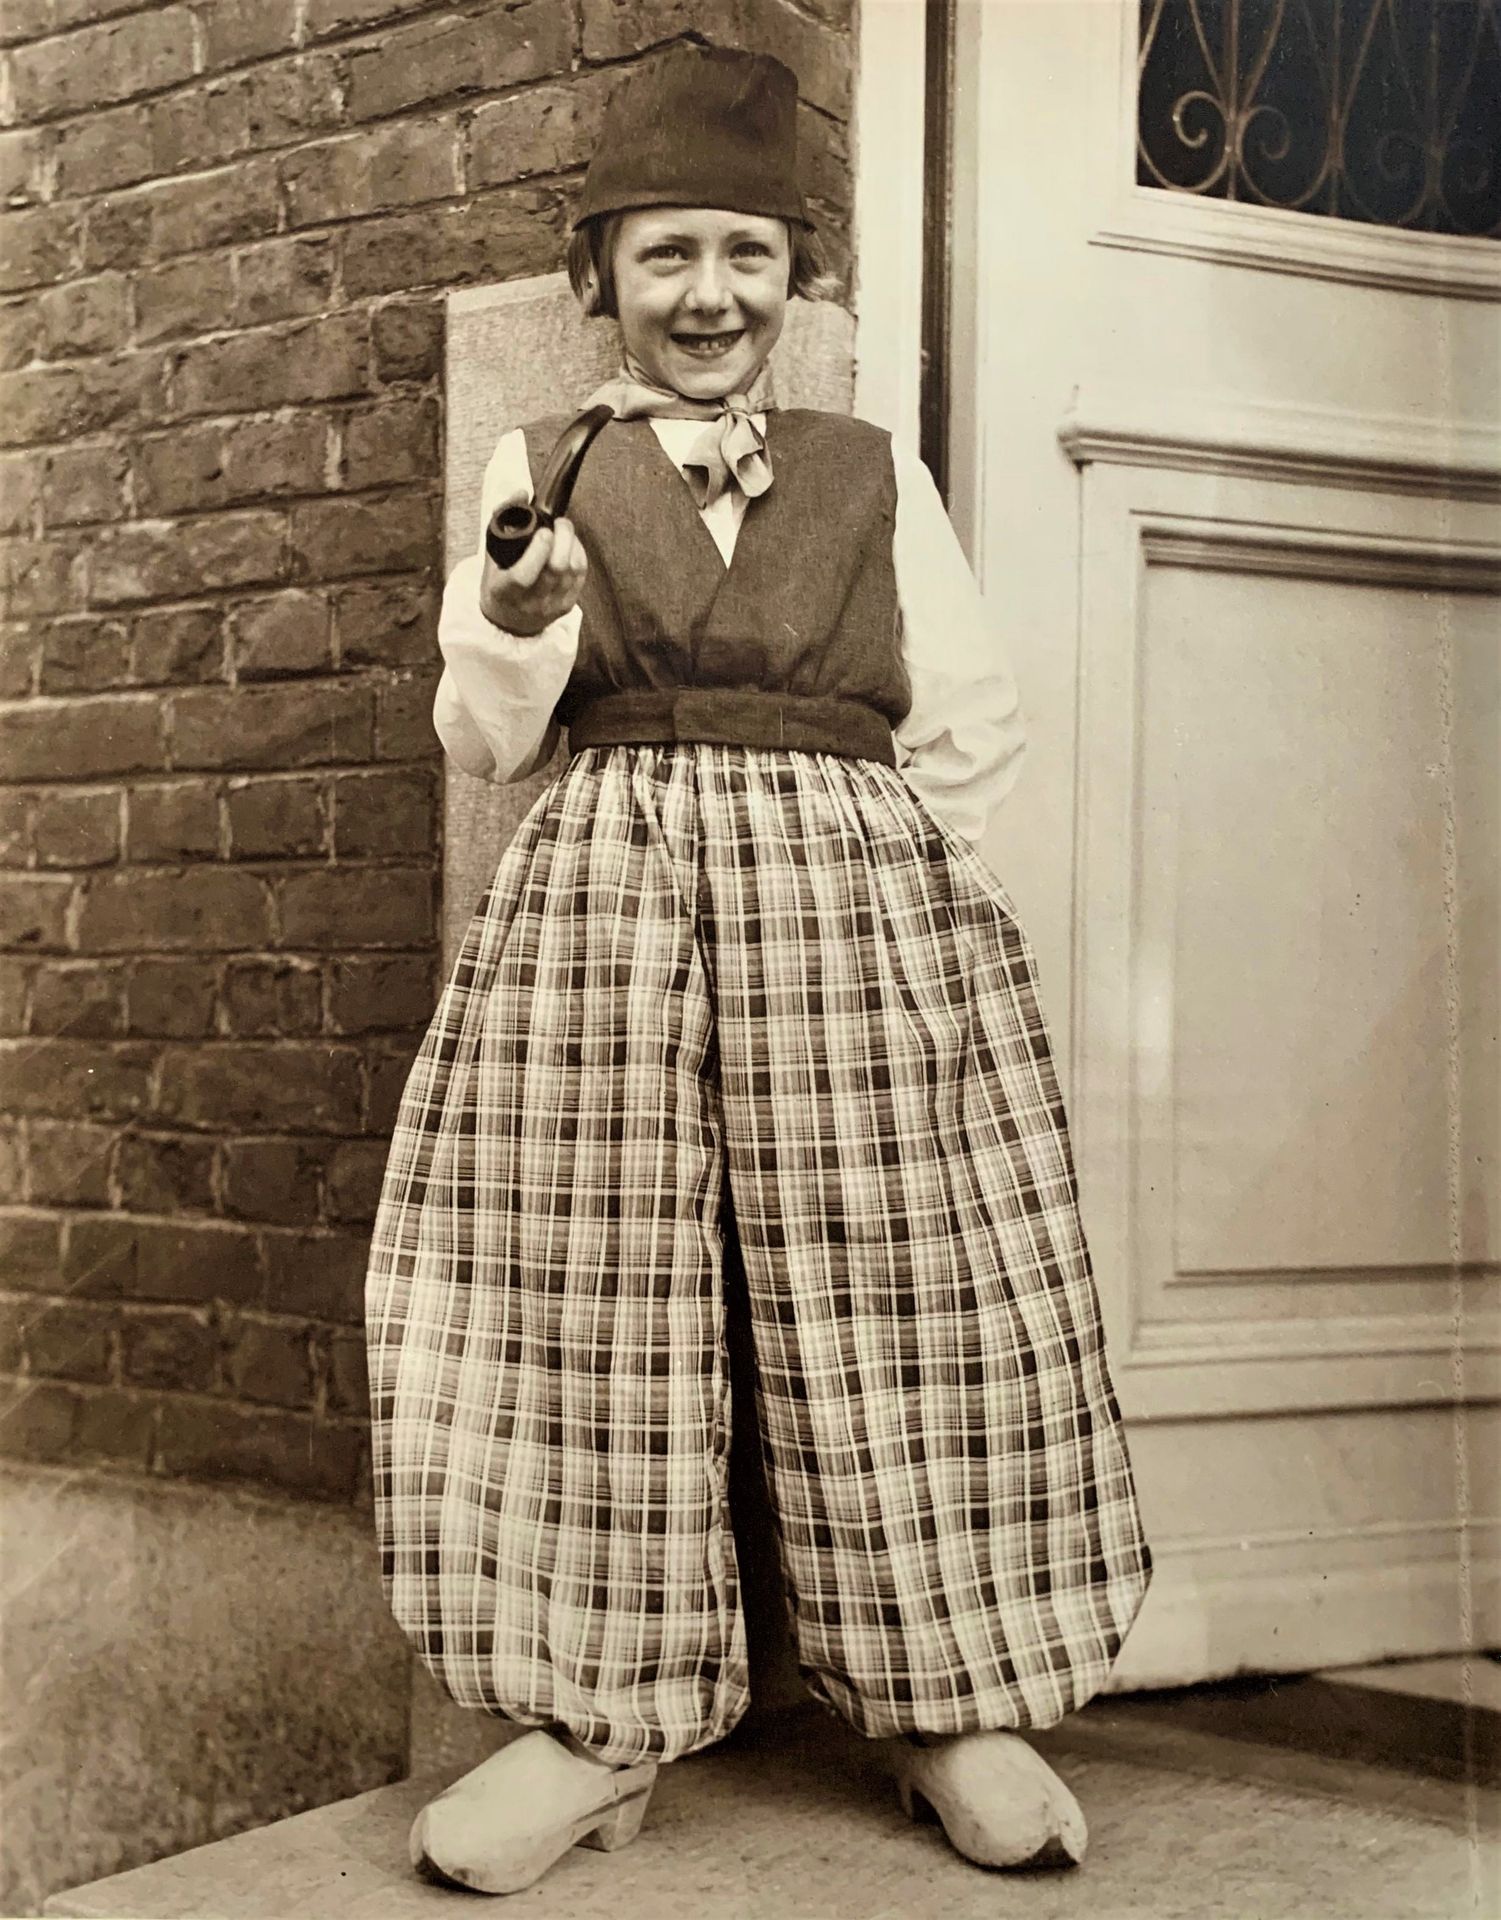 Null 来自荷兰的年轻女孩。大型银质摄影作品，约1930年，尺寸为29.5 x 23。一张有趣的照片。